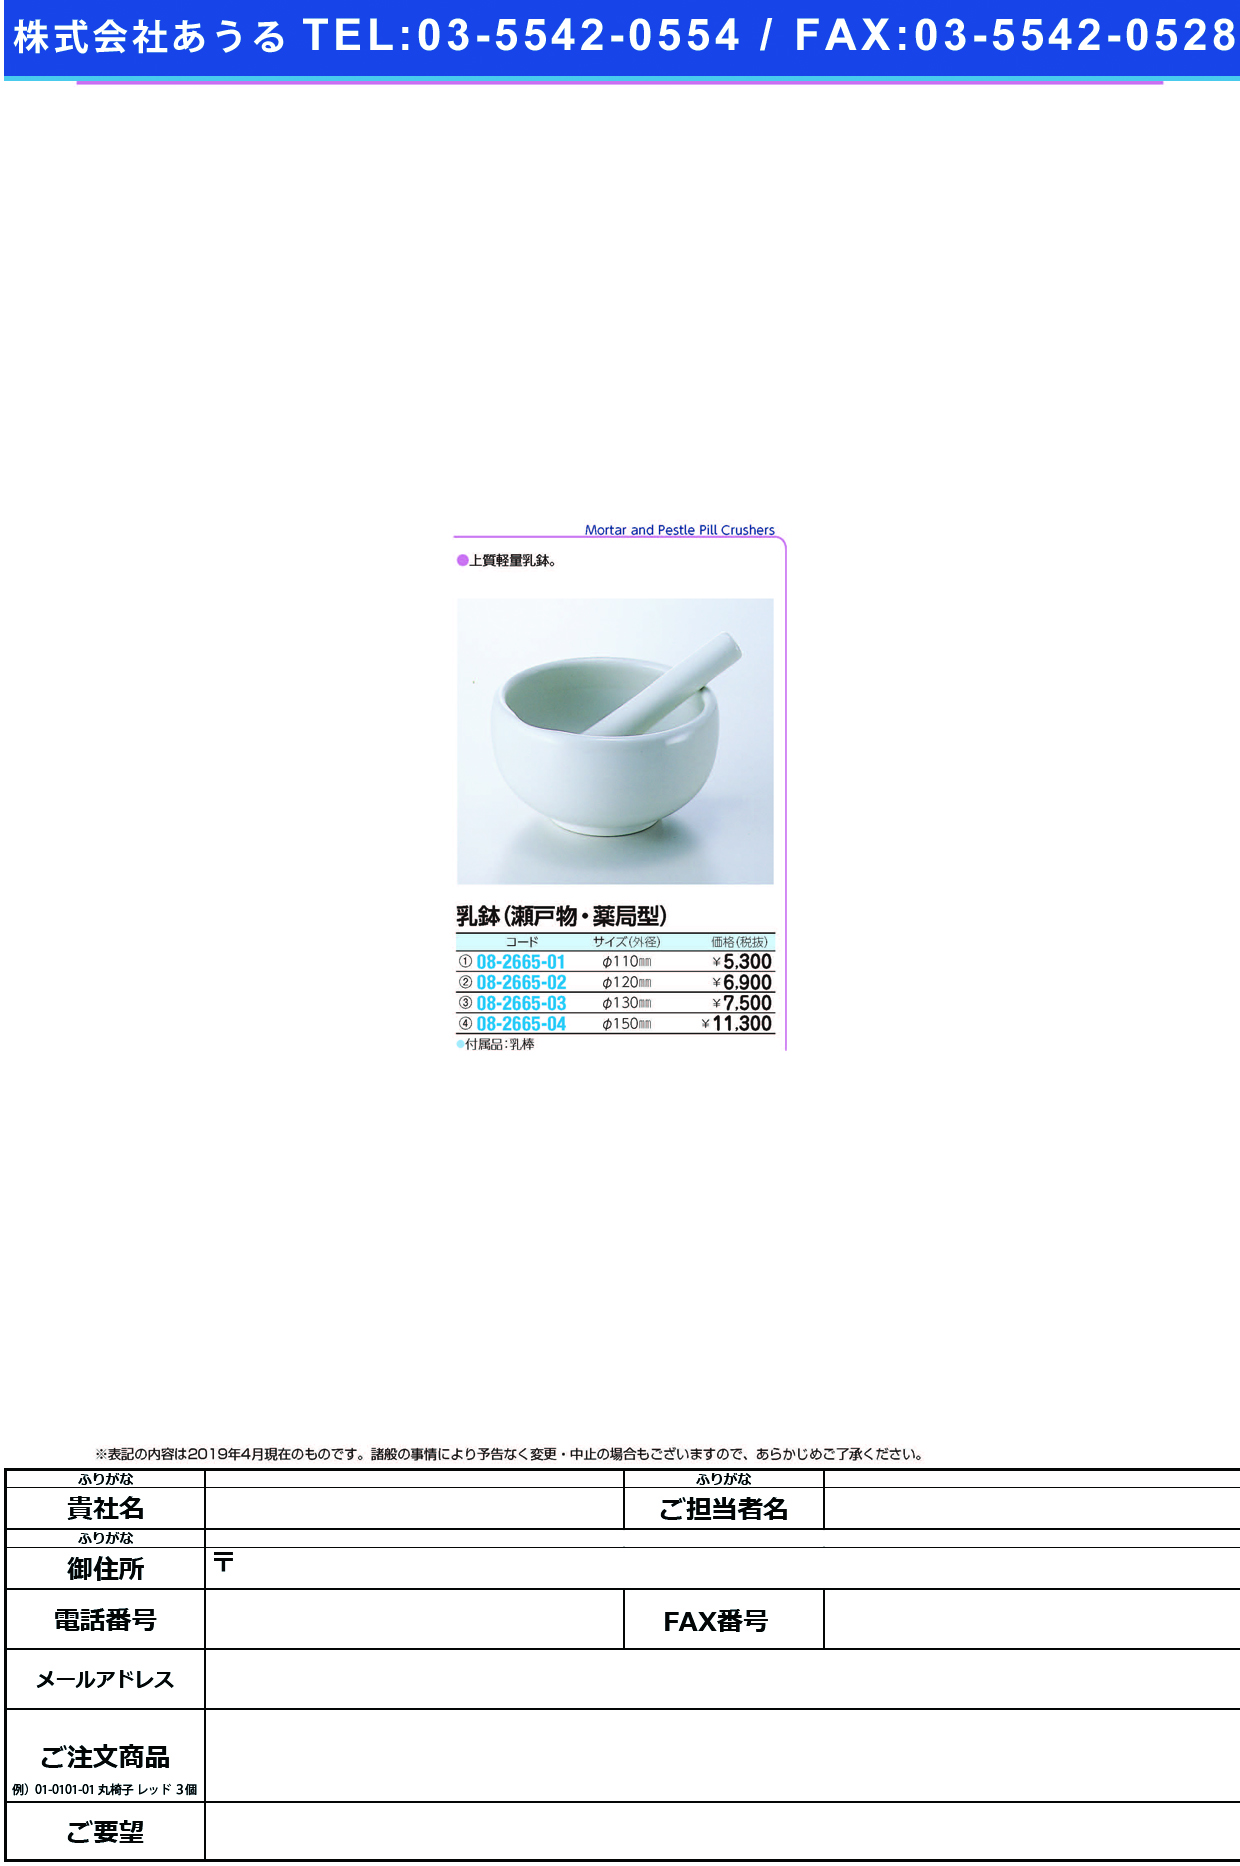 乳鉢（瀬戸物・薬局型） 110MM ﾆｭｳﾊﾞﾁ(ｾﾄ･ﾔｯｷｮｸｶﾞﾀ)